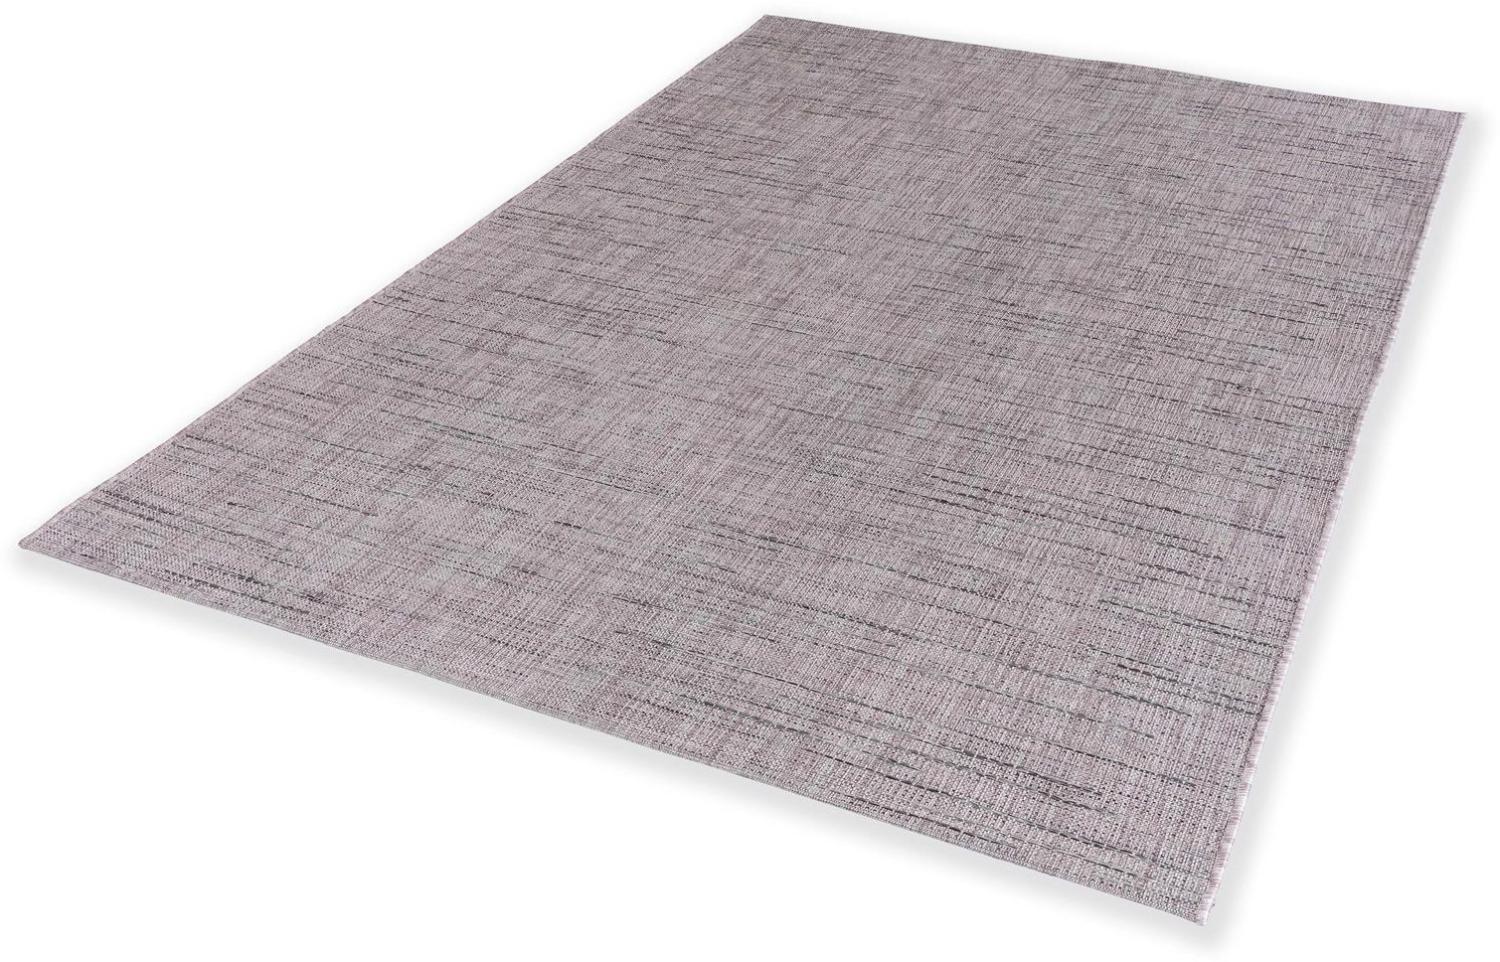 Teppich in rosa aus 100% Polypropylen - 290x200x0,5cm (LxBxH) Bild 1